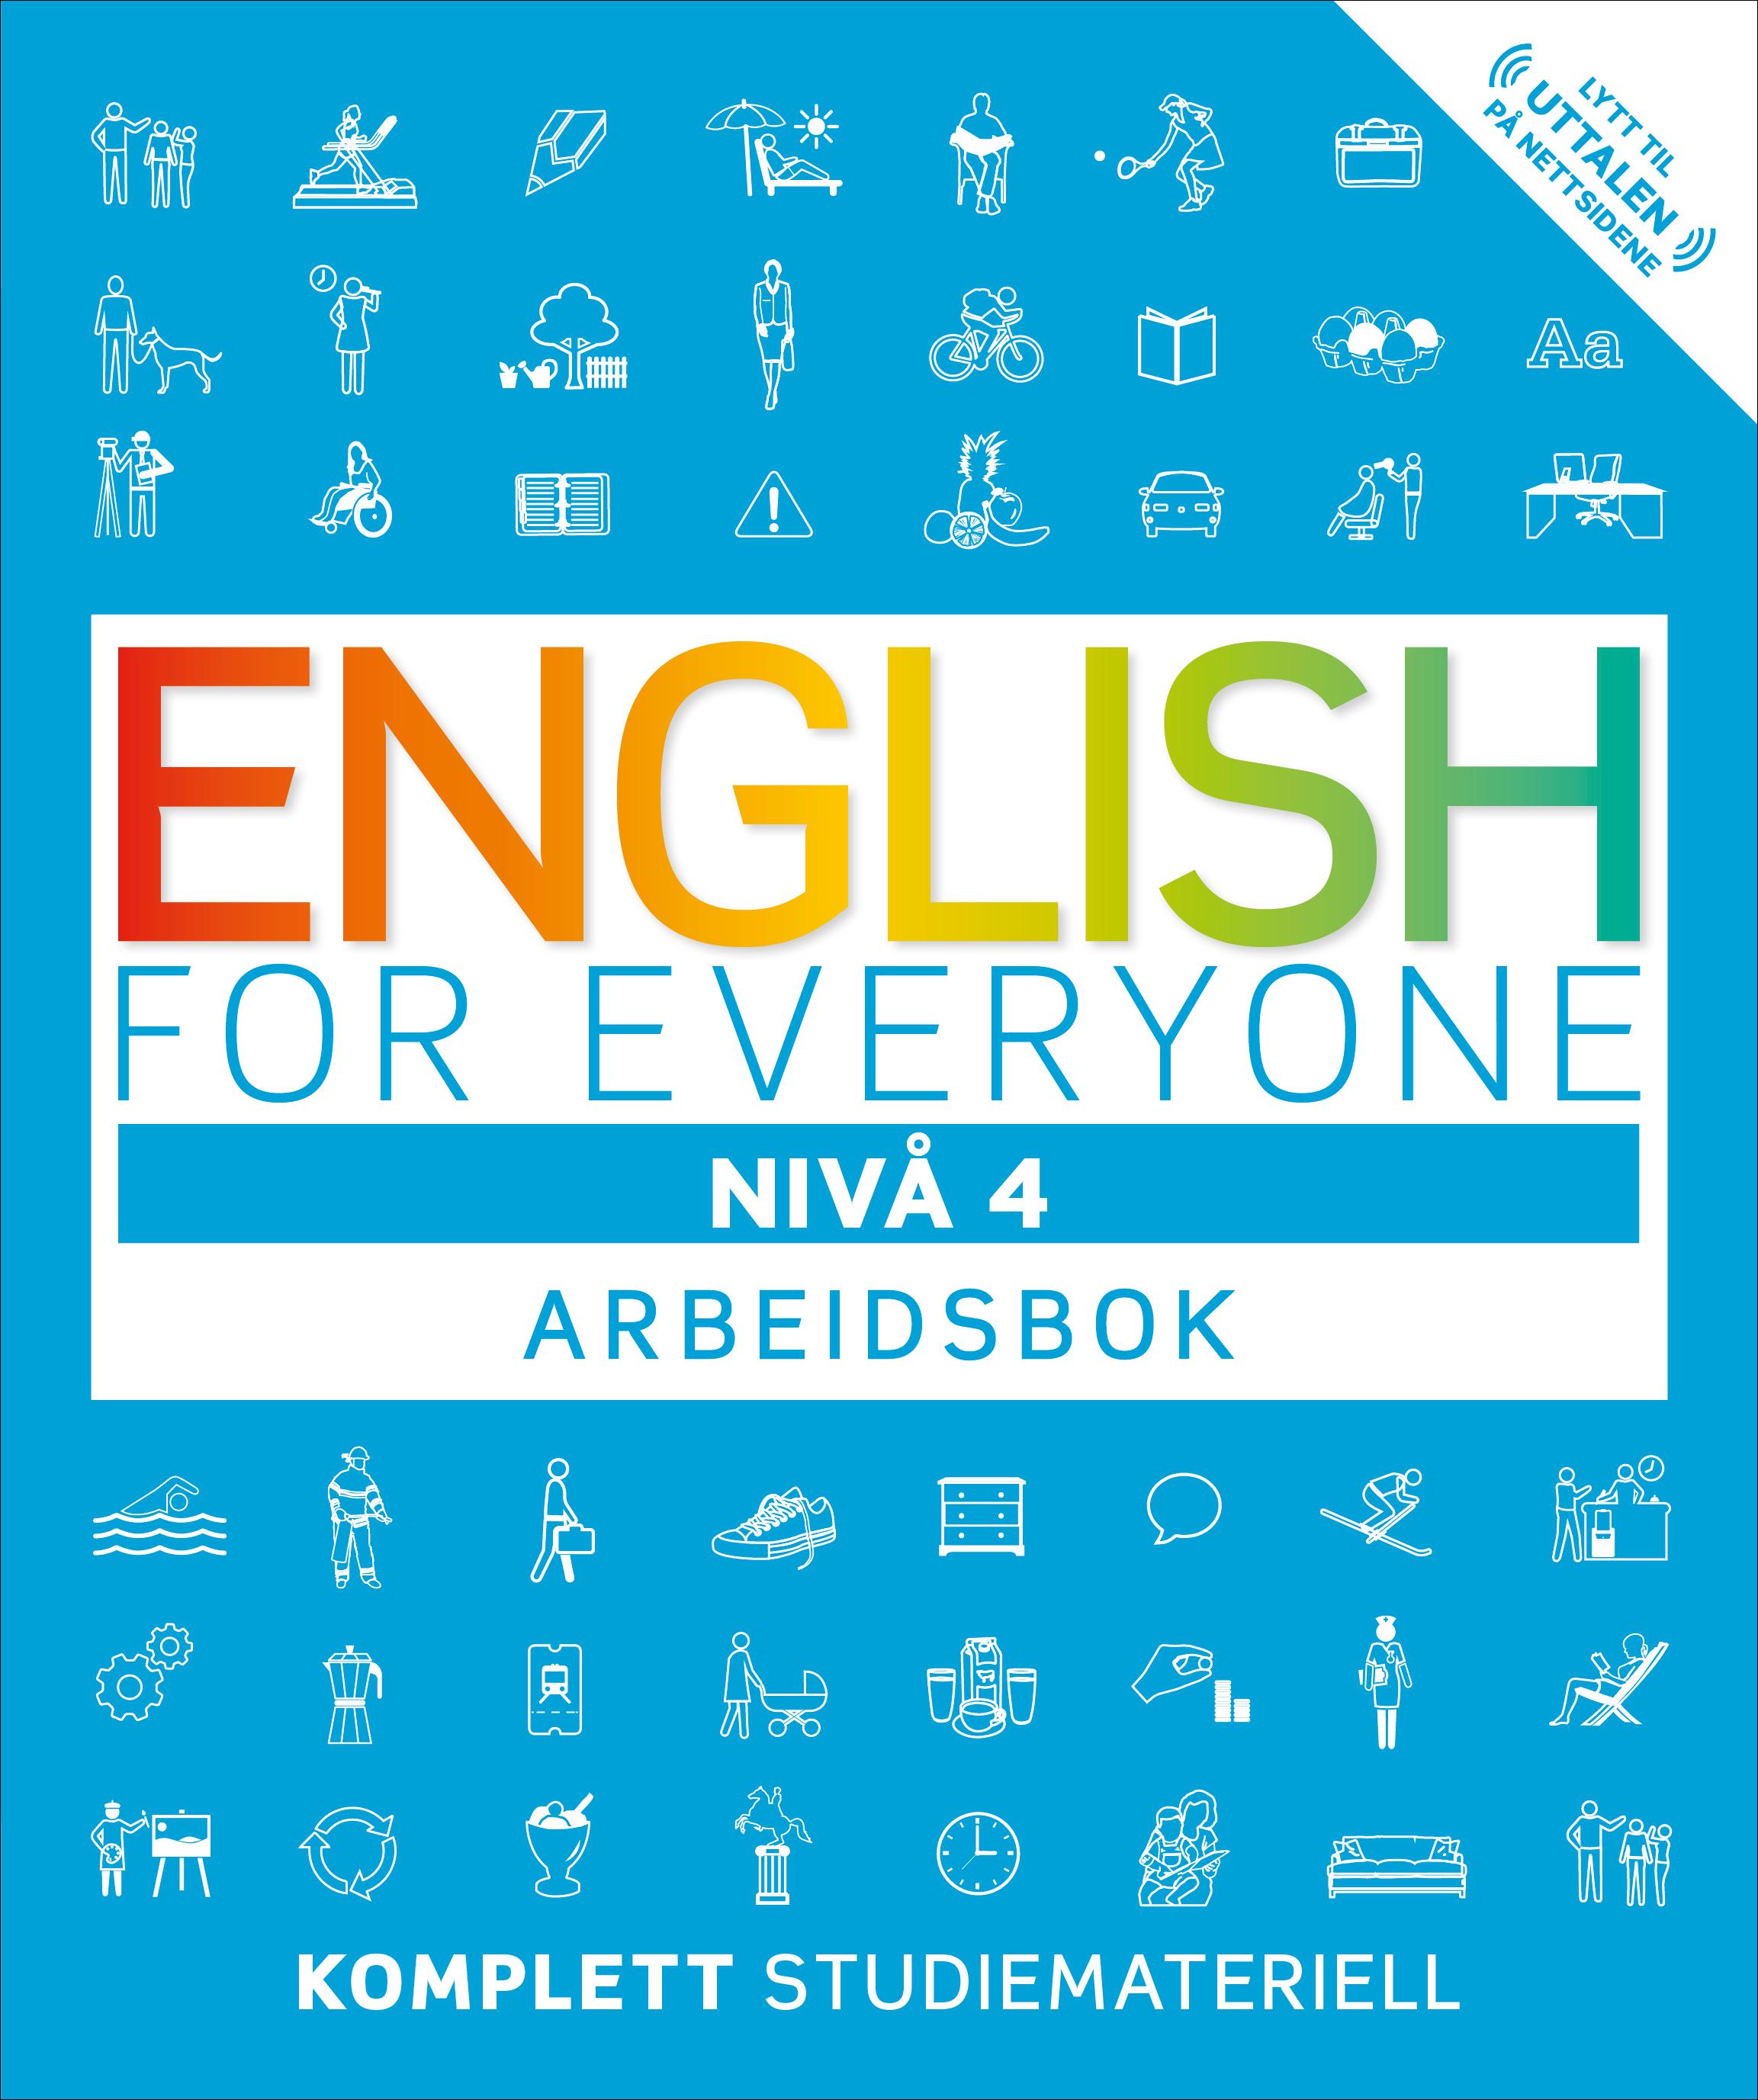 English for everyone - arbeidsbok, nivå 4 | ARK Bokhandel